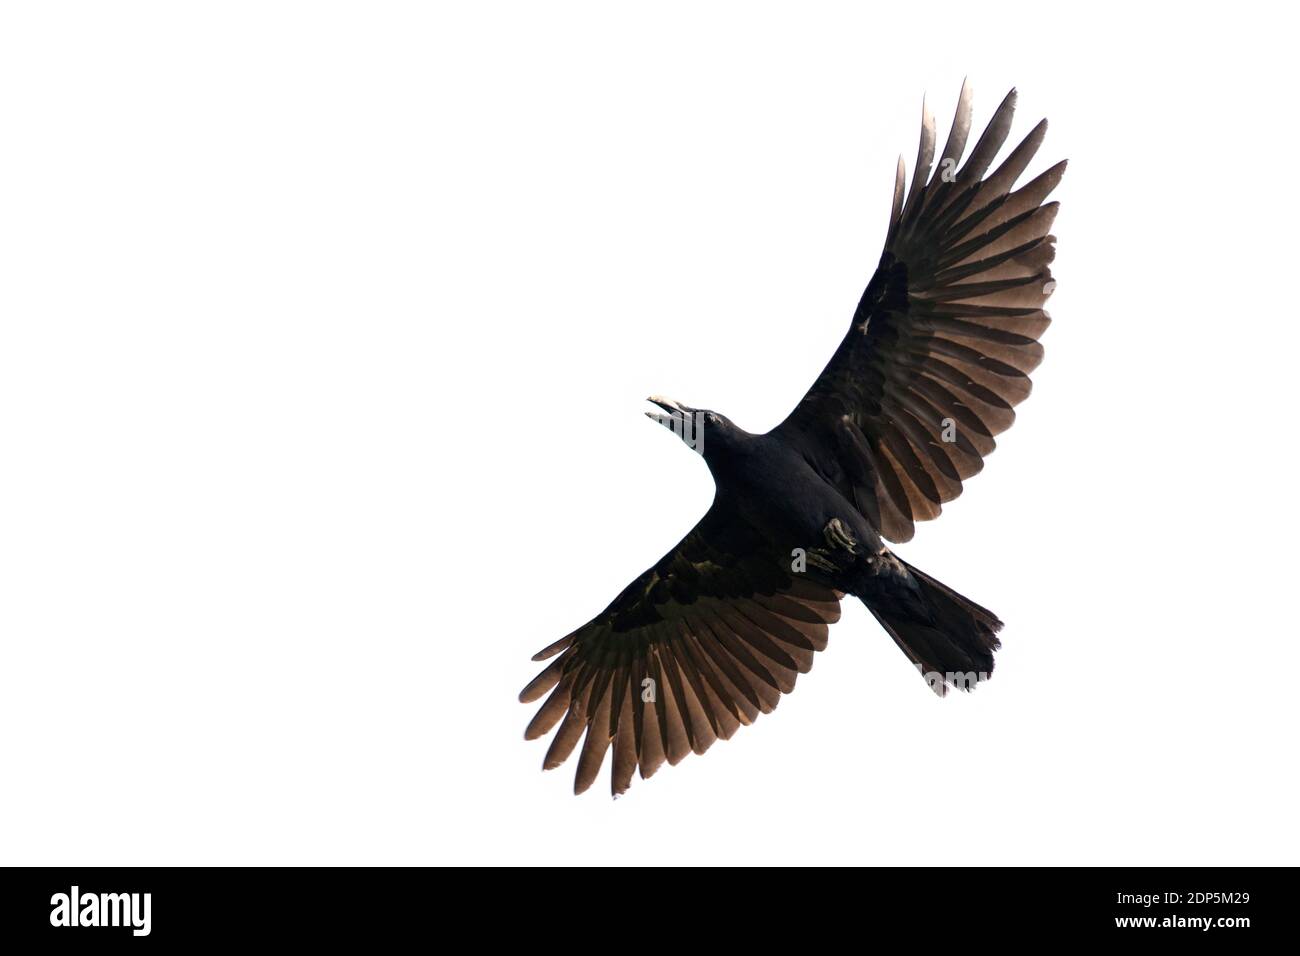 Image of black crow flying on white background. Animal. Black Bird. Stock Photo